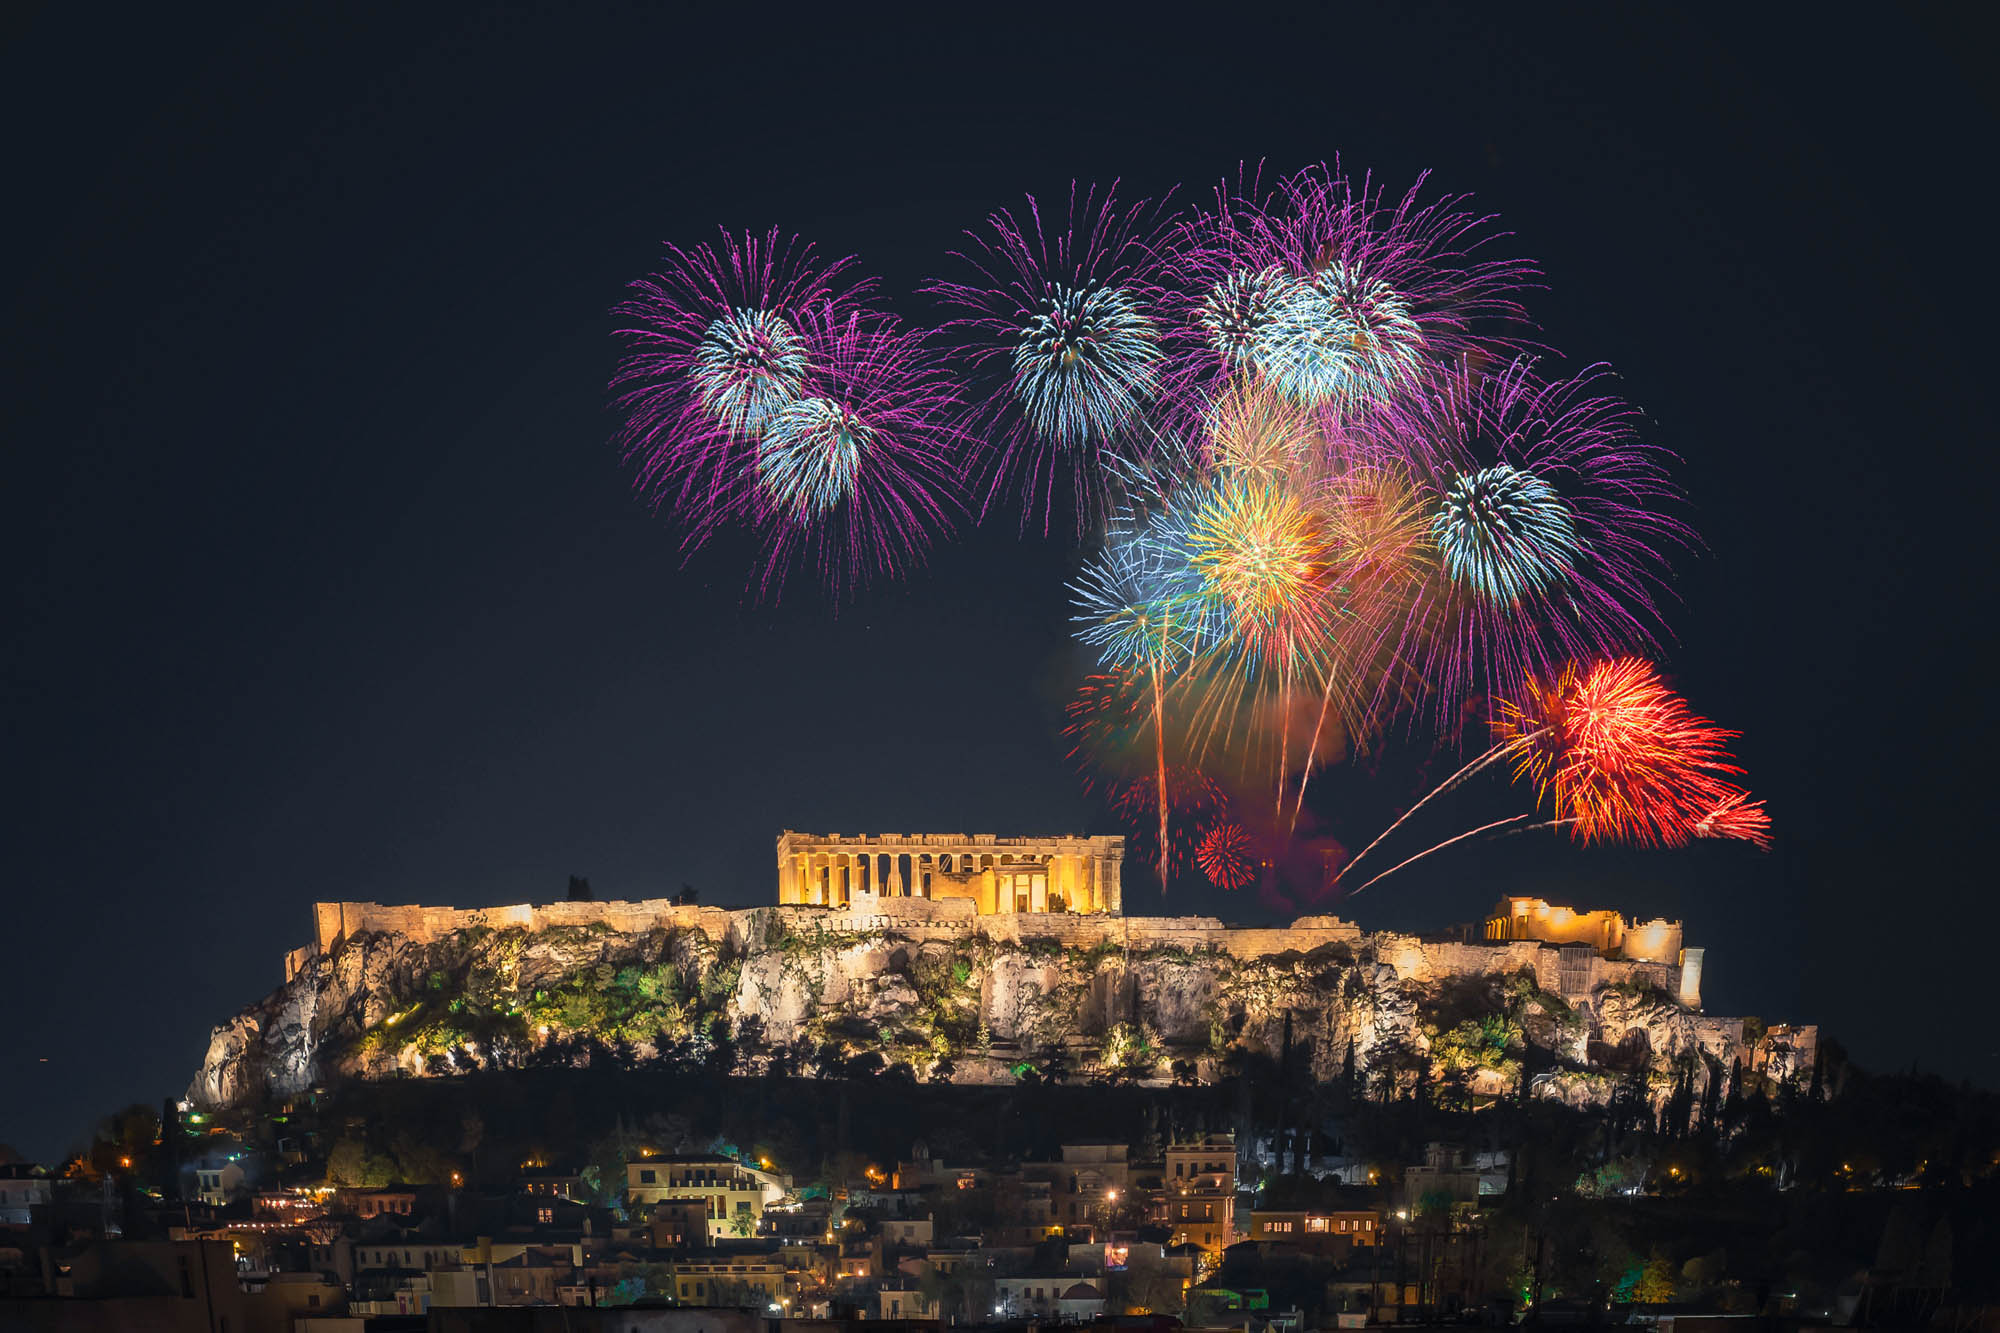 niesamowity widok na Akropol w nocy, sztuczne ognie i fajerwerki